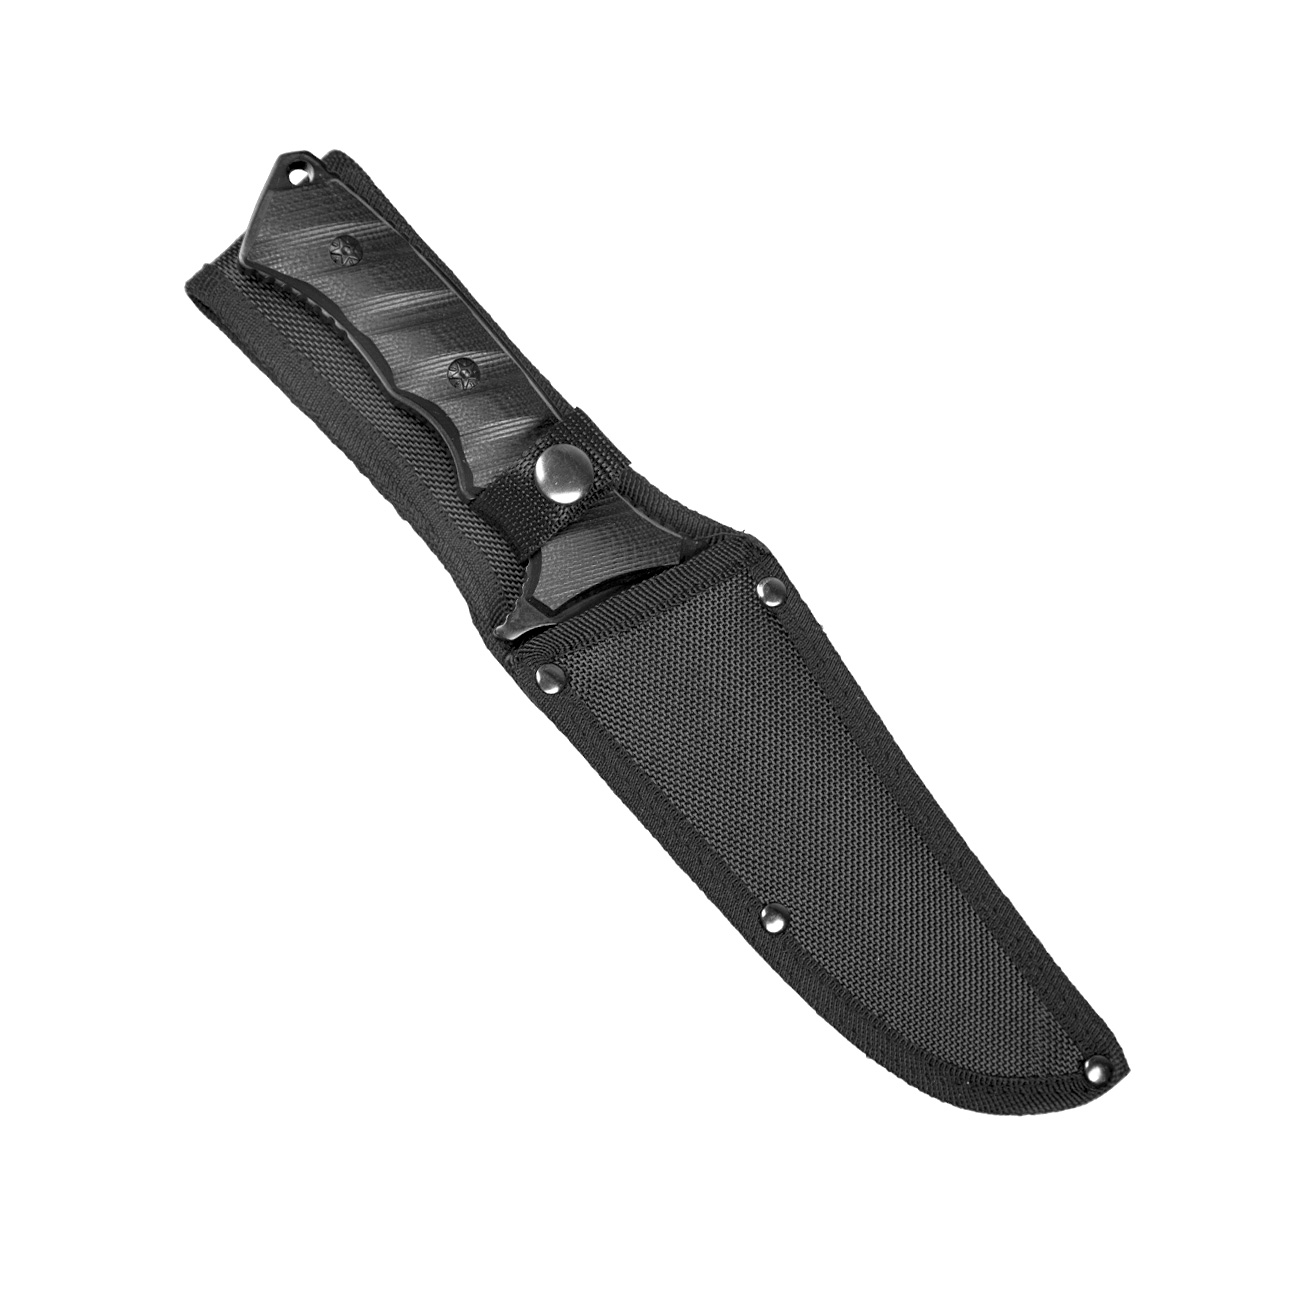 Feststehendes Messer Military Style schwarz inkl. Gürtelscheide Bild 1